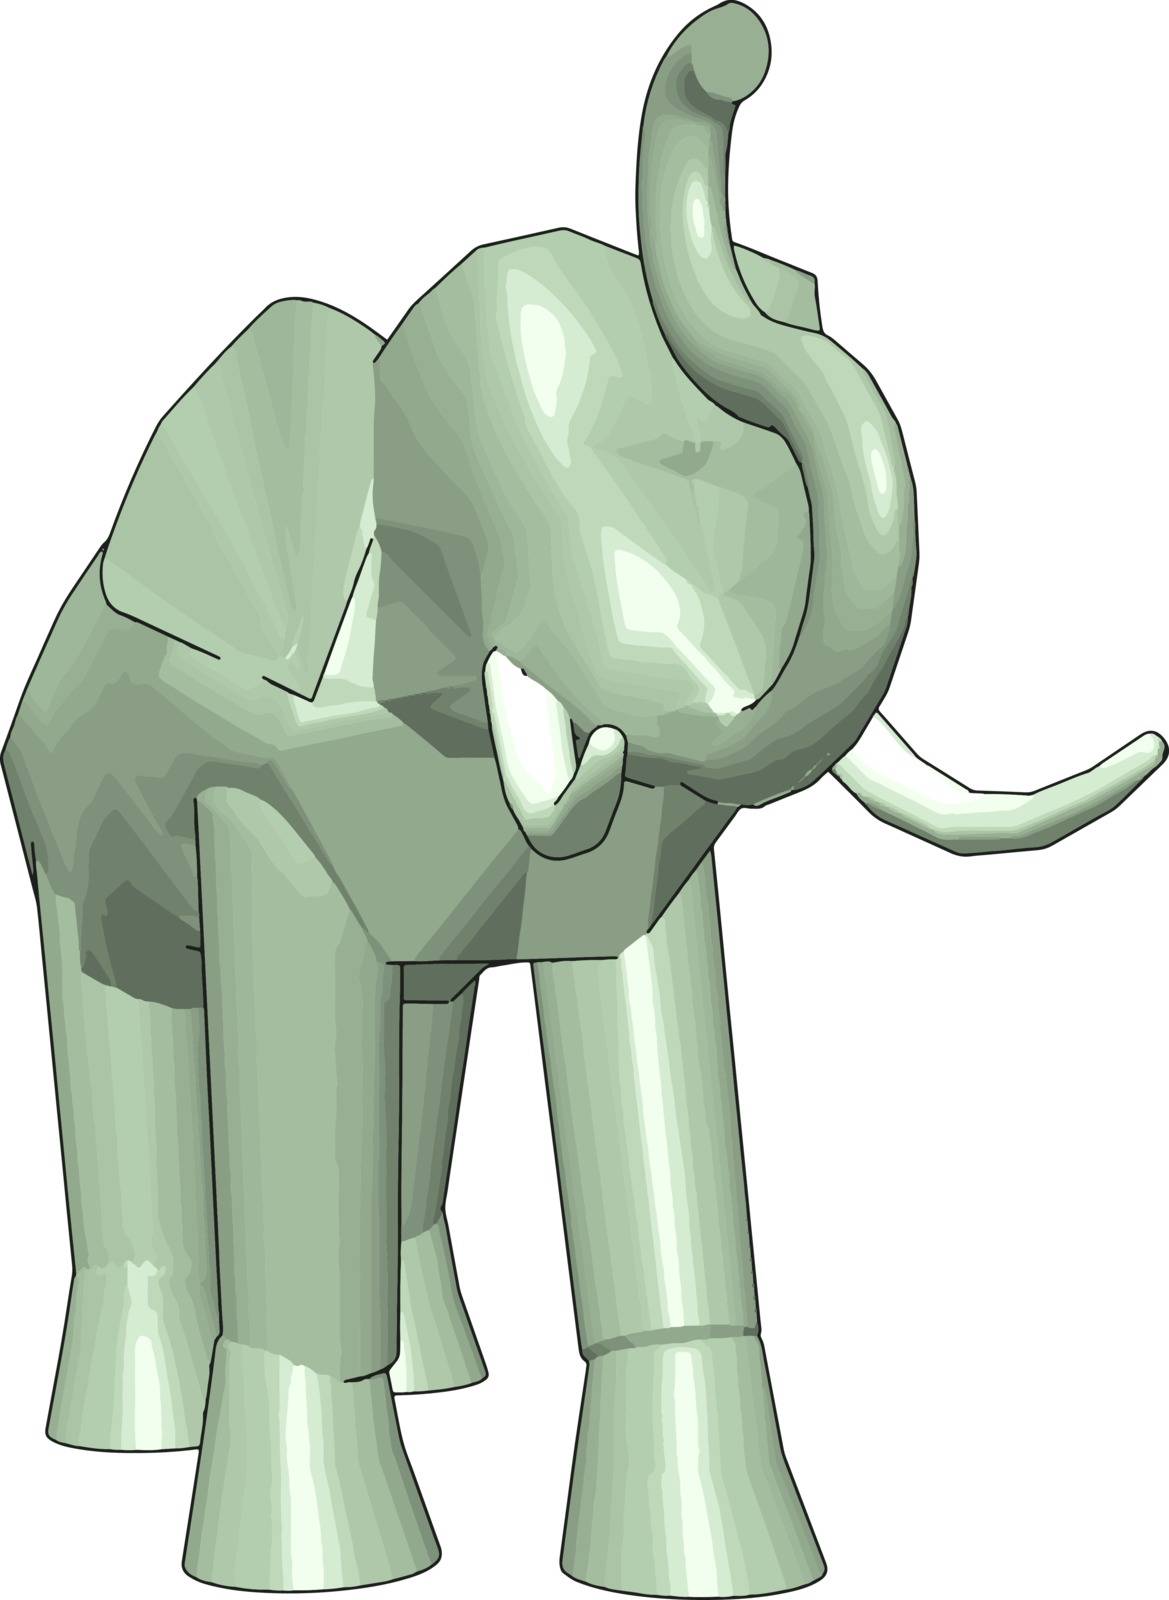 3D model of elephant, illustration, vector on white background.